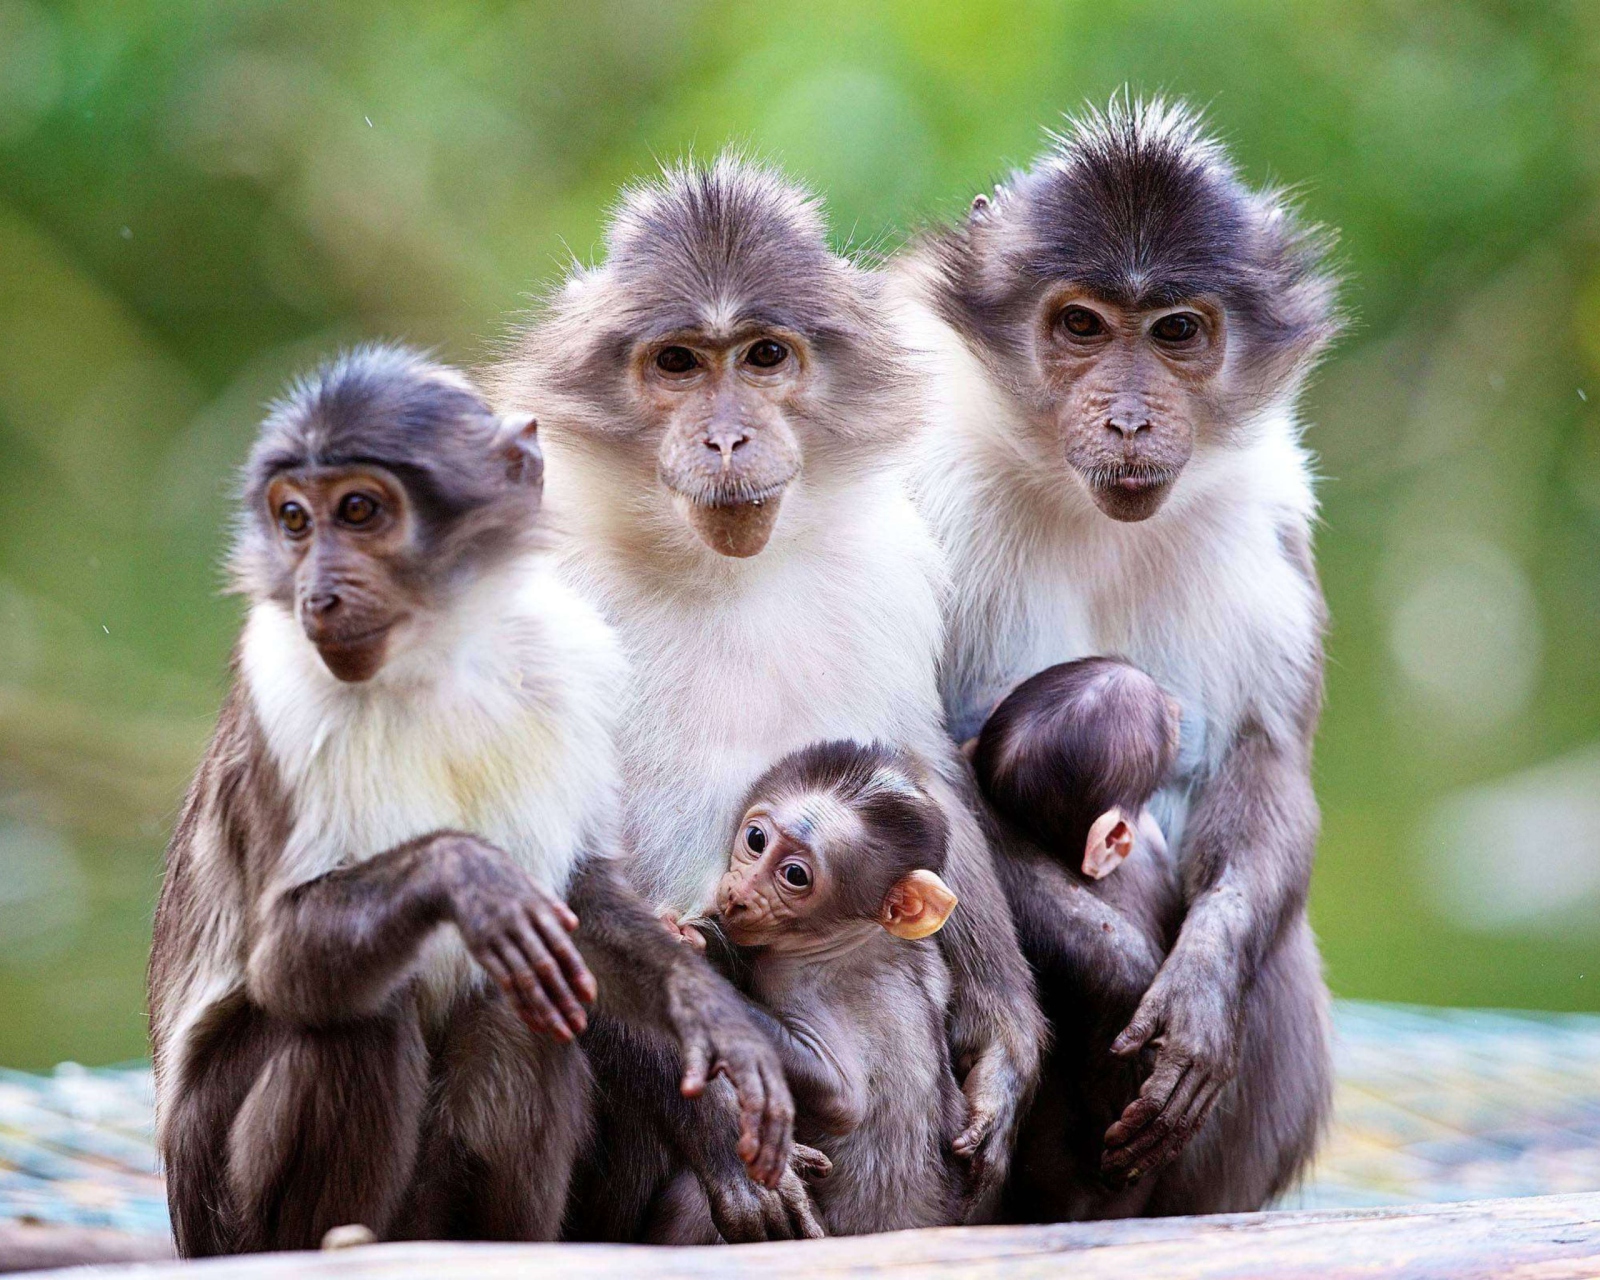 Обои Funny Monkeys With Their Babies 1600x1280